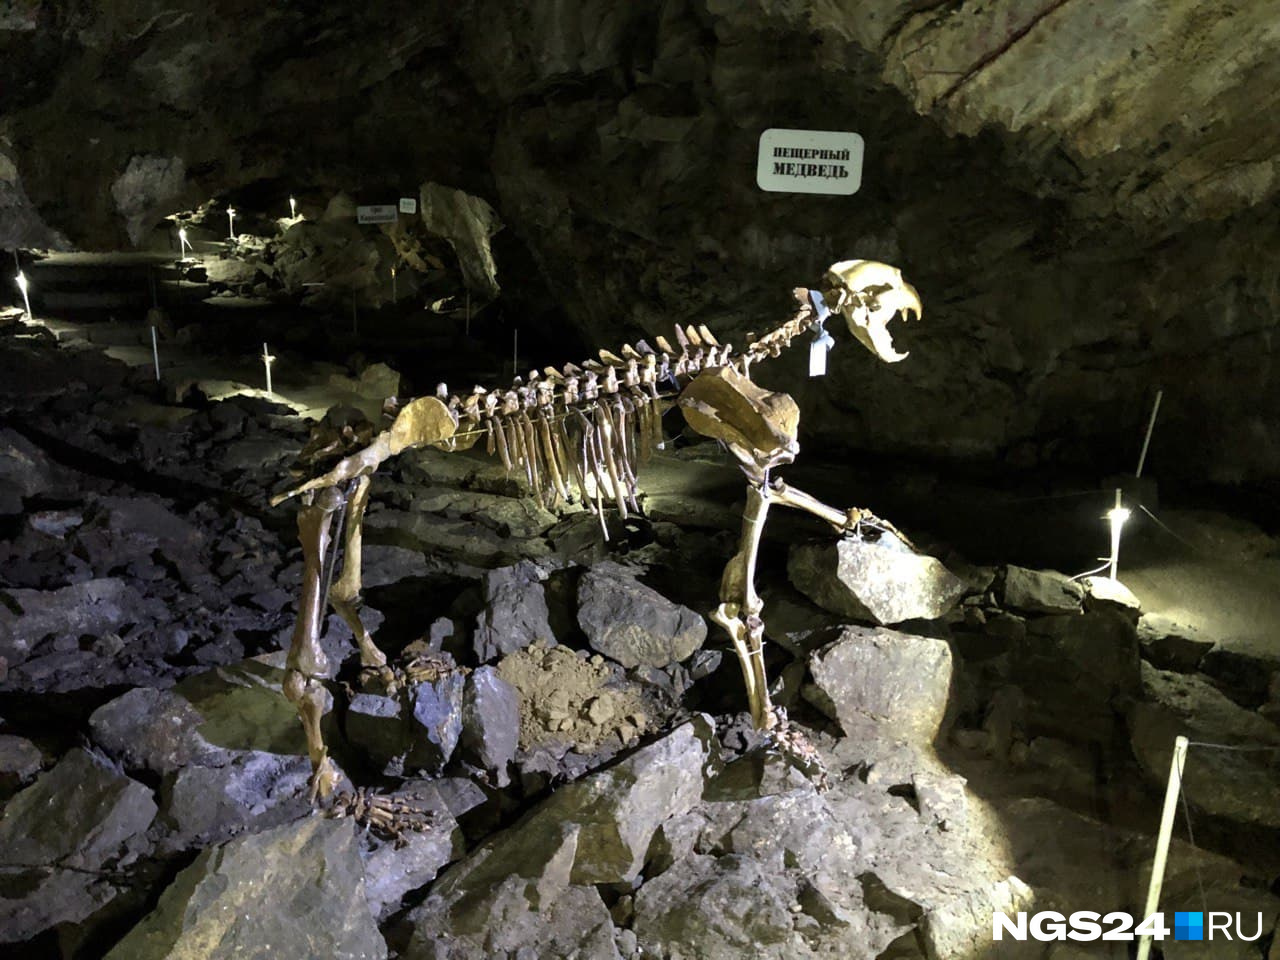 Скелет большого пещерного медведя